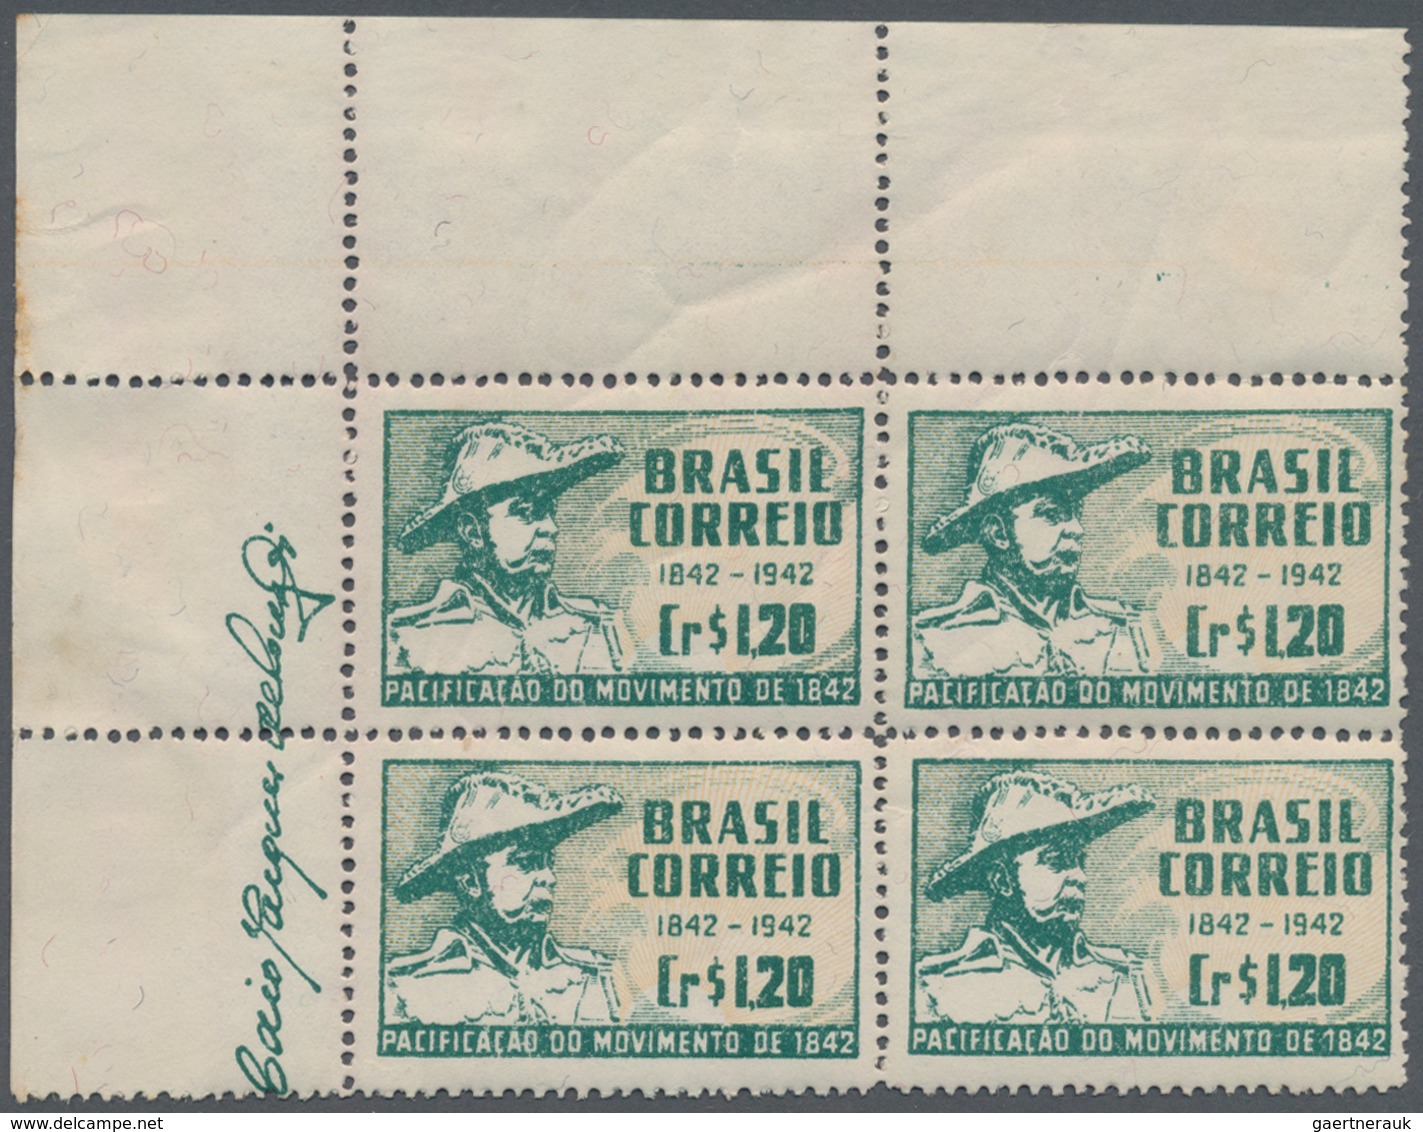 Brasilien: 1919/1958, MARGIN IMPRINTS, splendid mint collection of 225 units up to blocks of 70, sho